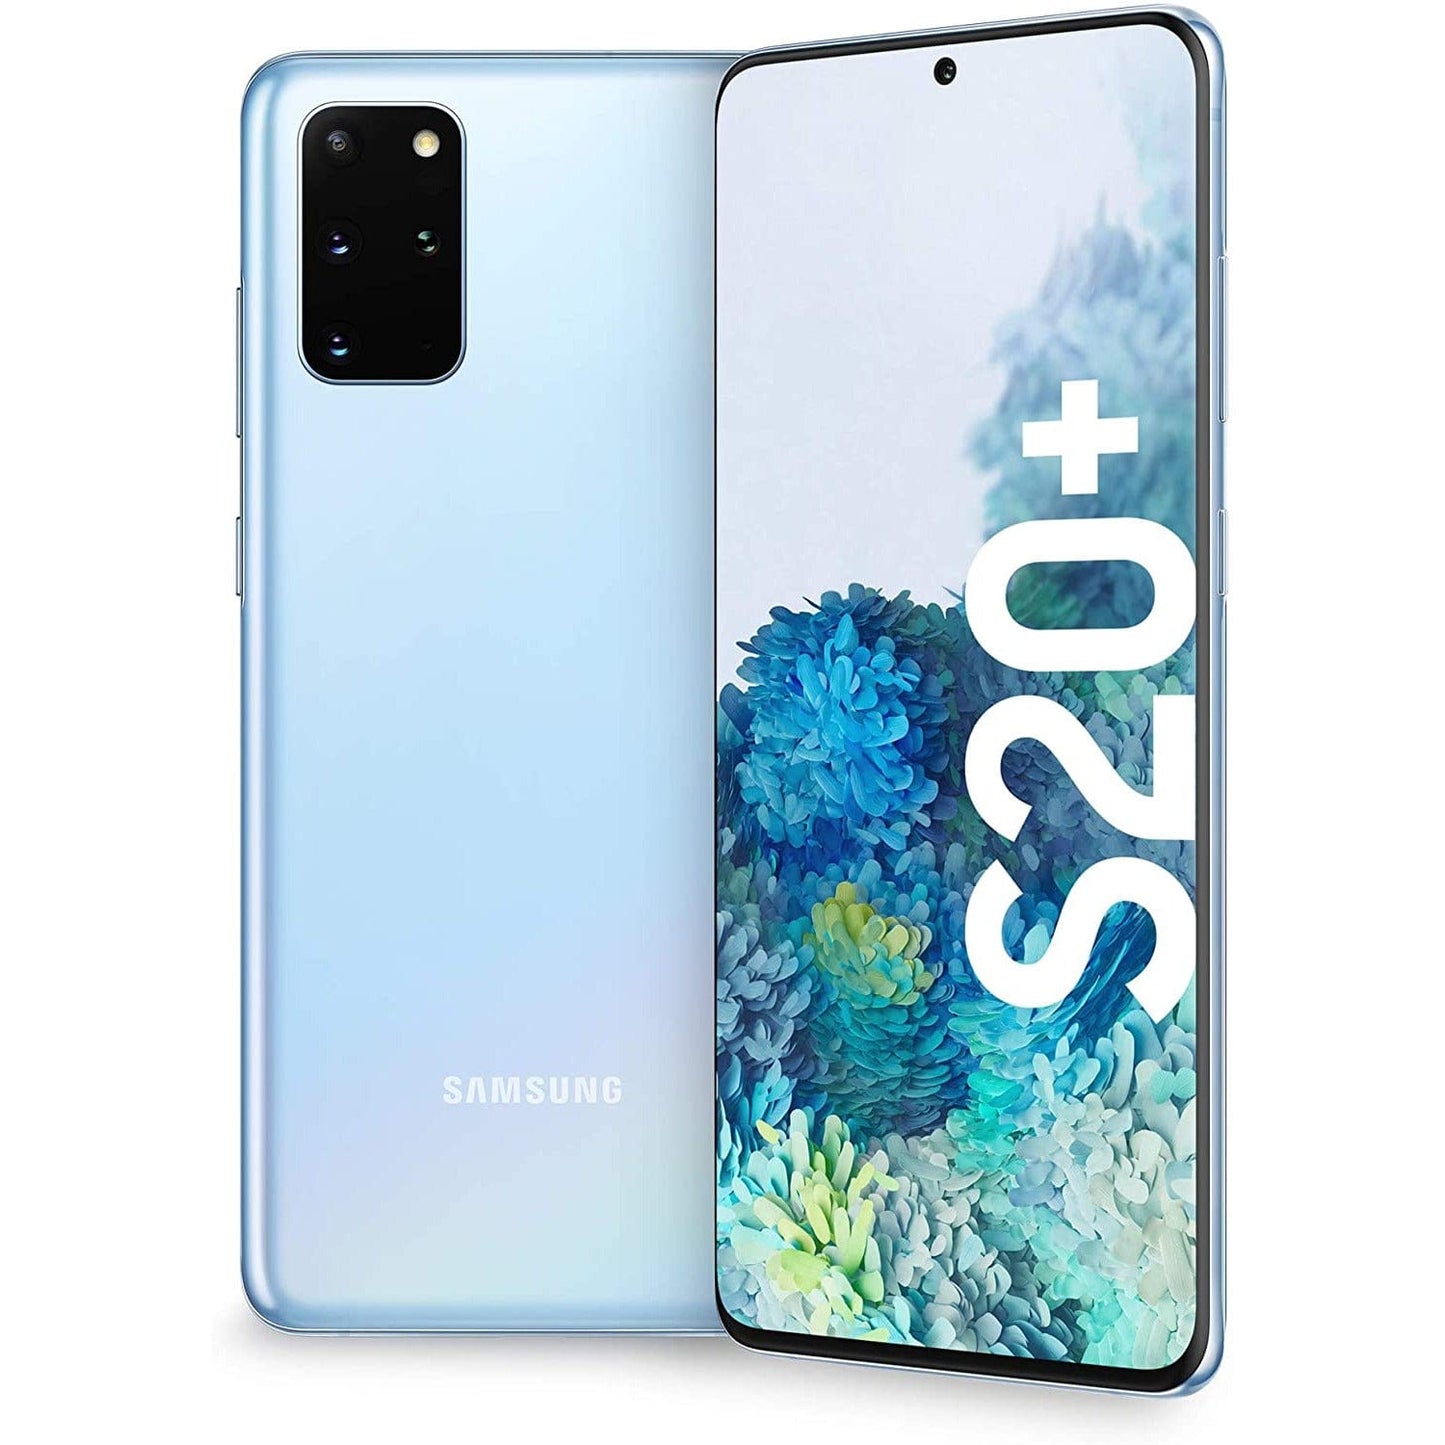 Samsung Galaxy S20+ - 128 GB - Cosmic Gray - Unlocked